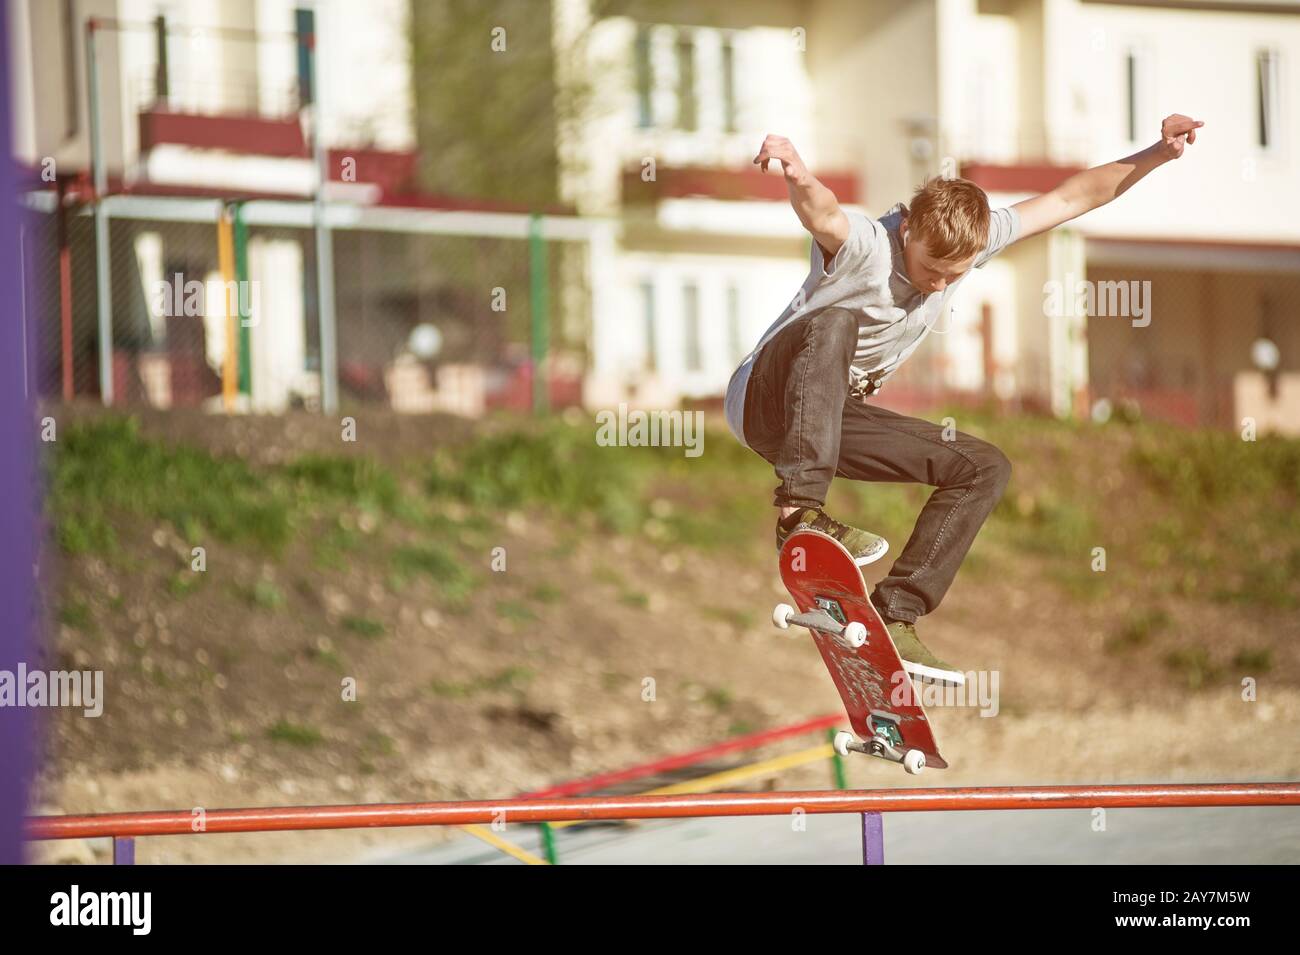 Un skate-board adolescent fait un tour d'ollie dans un skatepark à la périphérie de la ville Banque D'Images